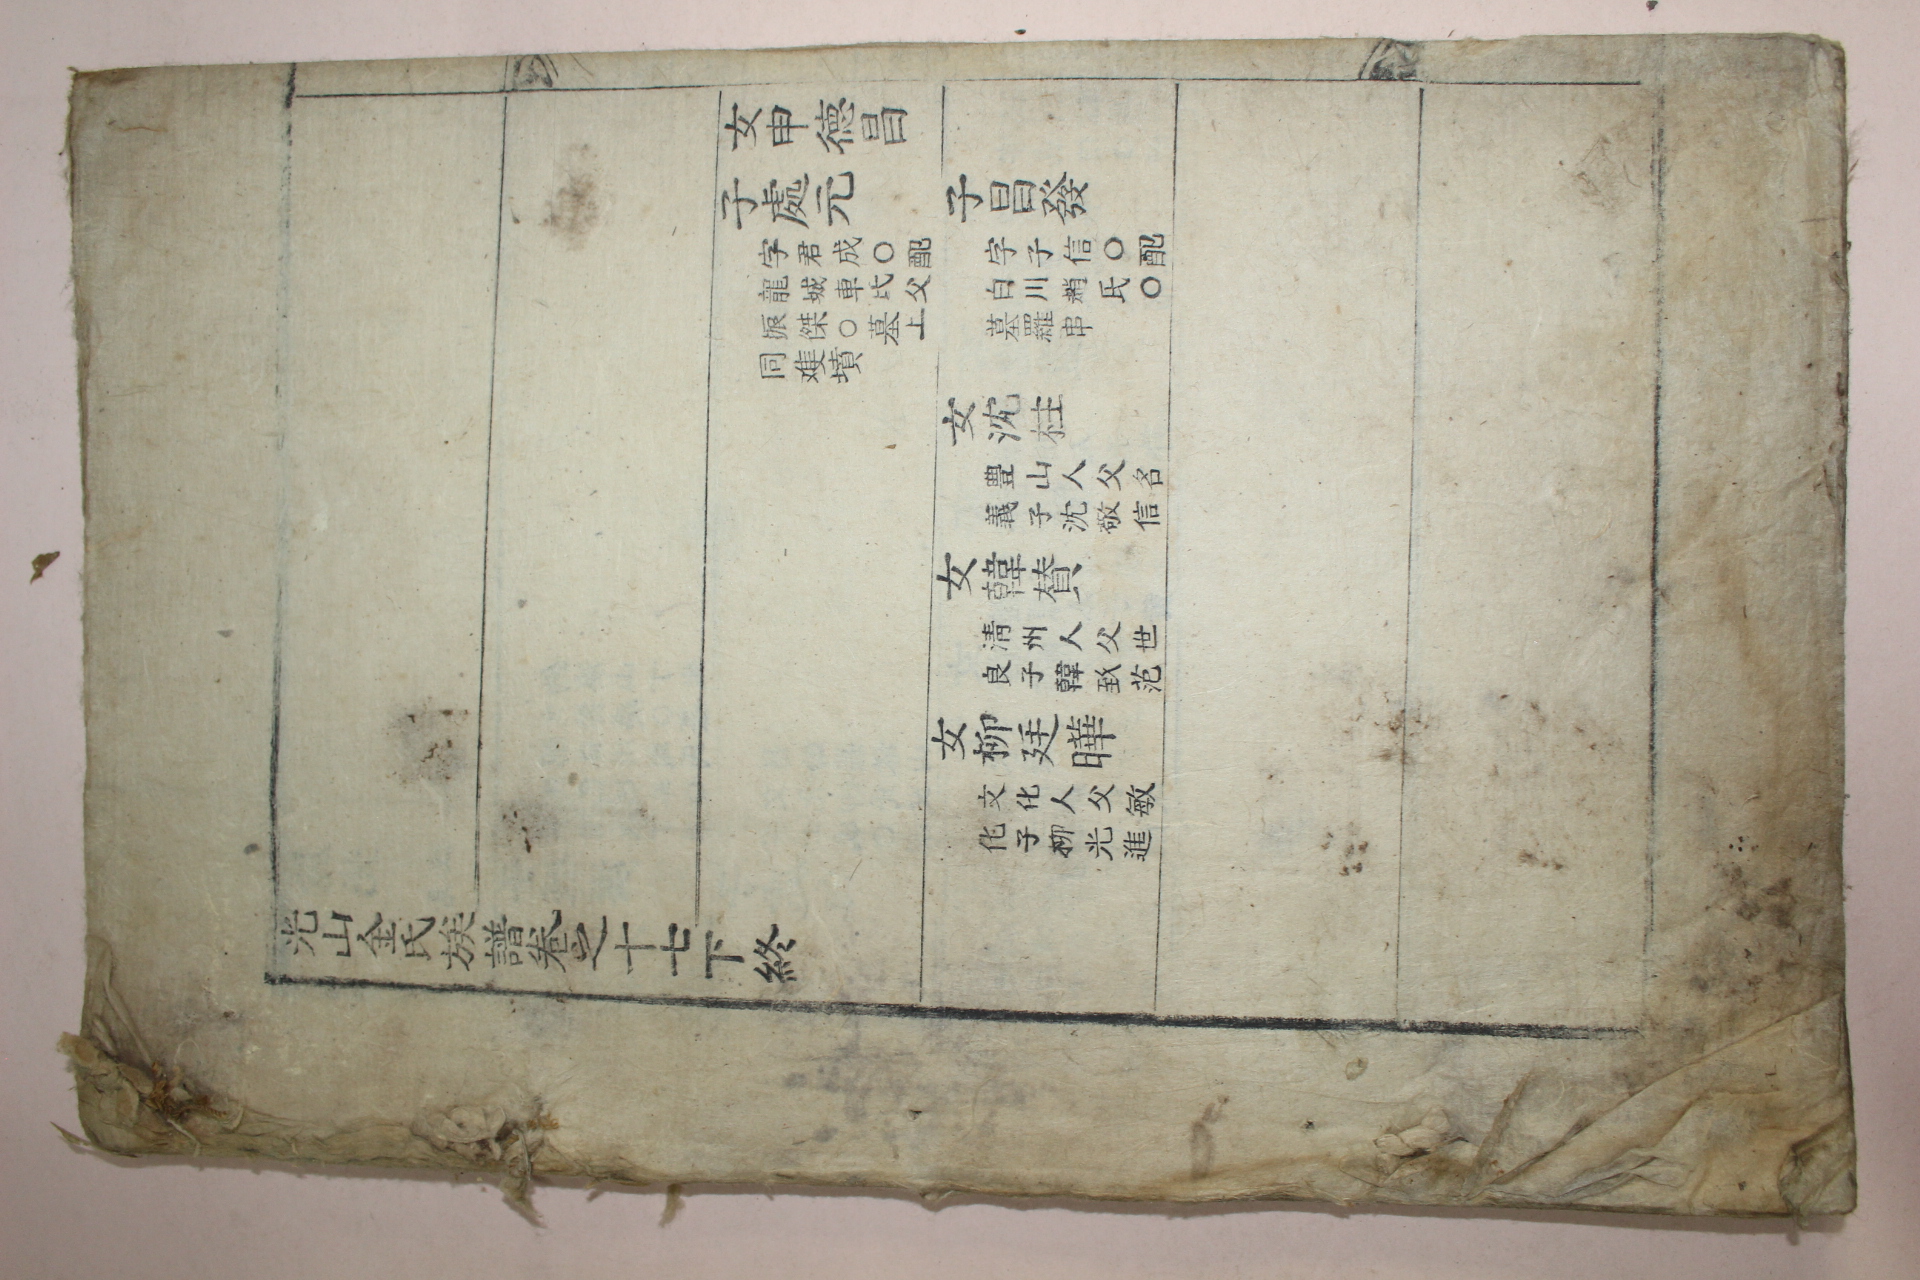 조선시대 목활자본 광산김씨족보(光山金氏族譜) 11책